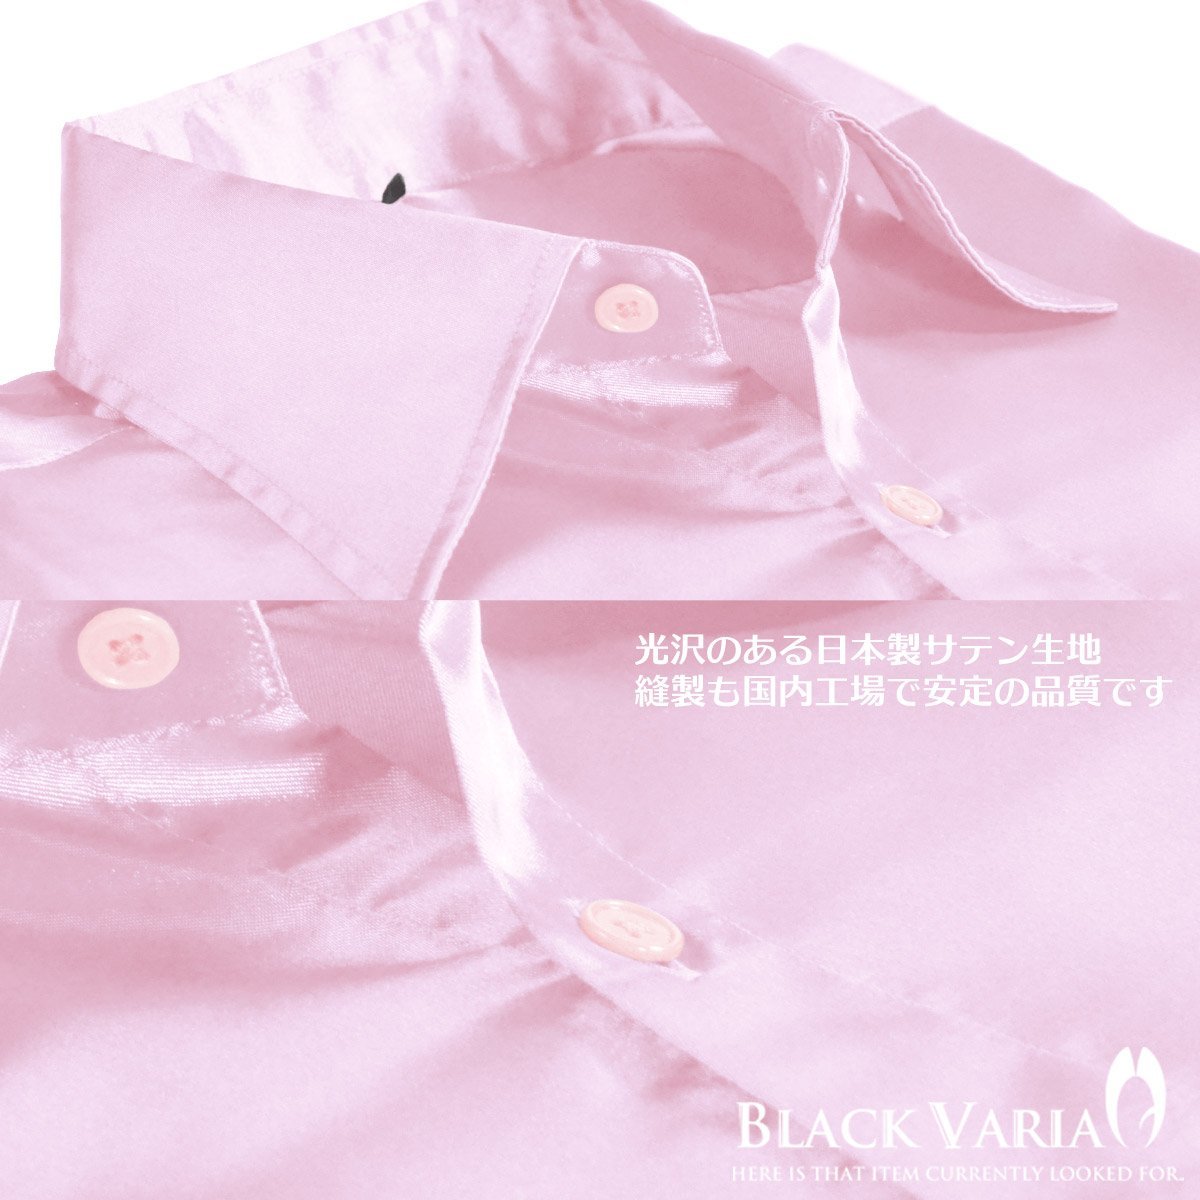  specification модификация SALE*3 шт. комплект *141405-pk2 BLACK VARIA глянец атлас одноцветный тонкий постоянный цветное платье рубашка мужской ( свет розовый ) SS костюм 